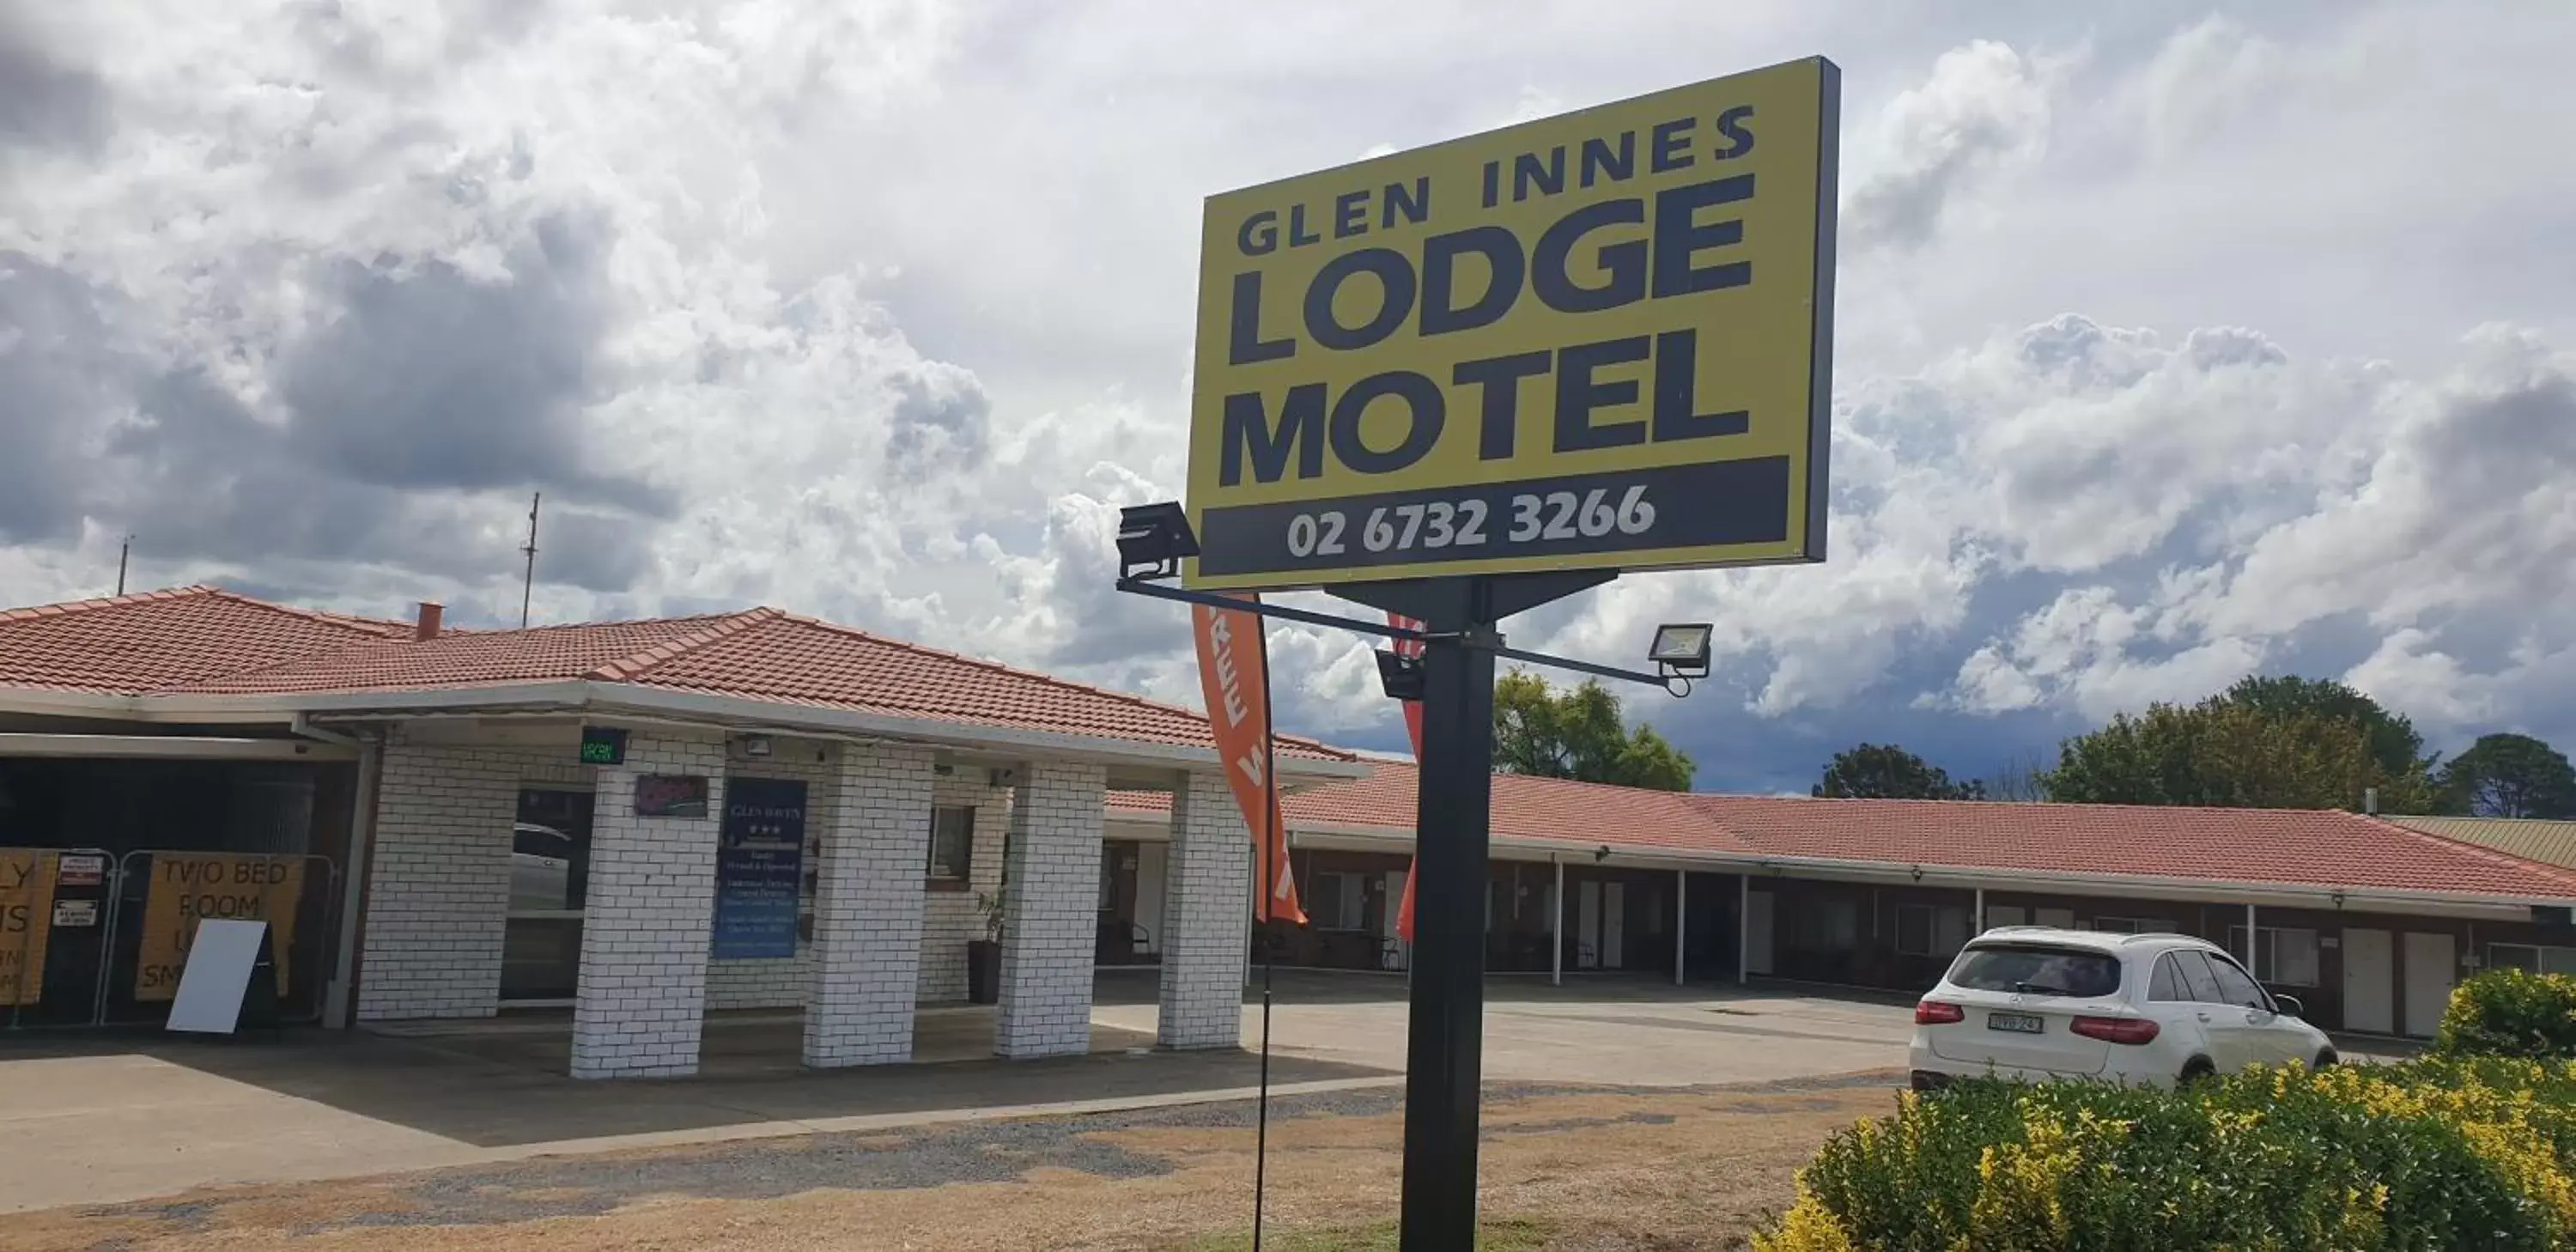 Property building in Glen Innes Lodge Motel